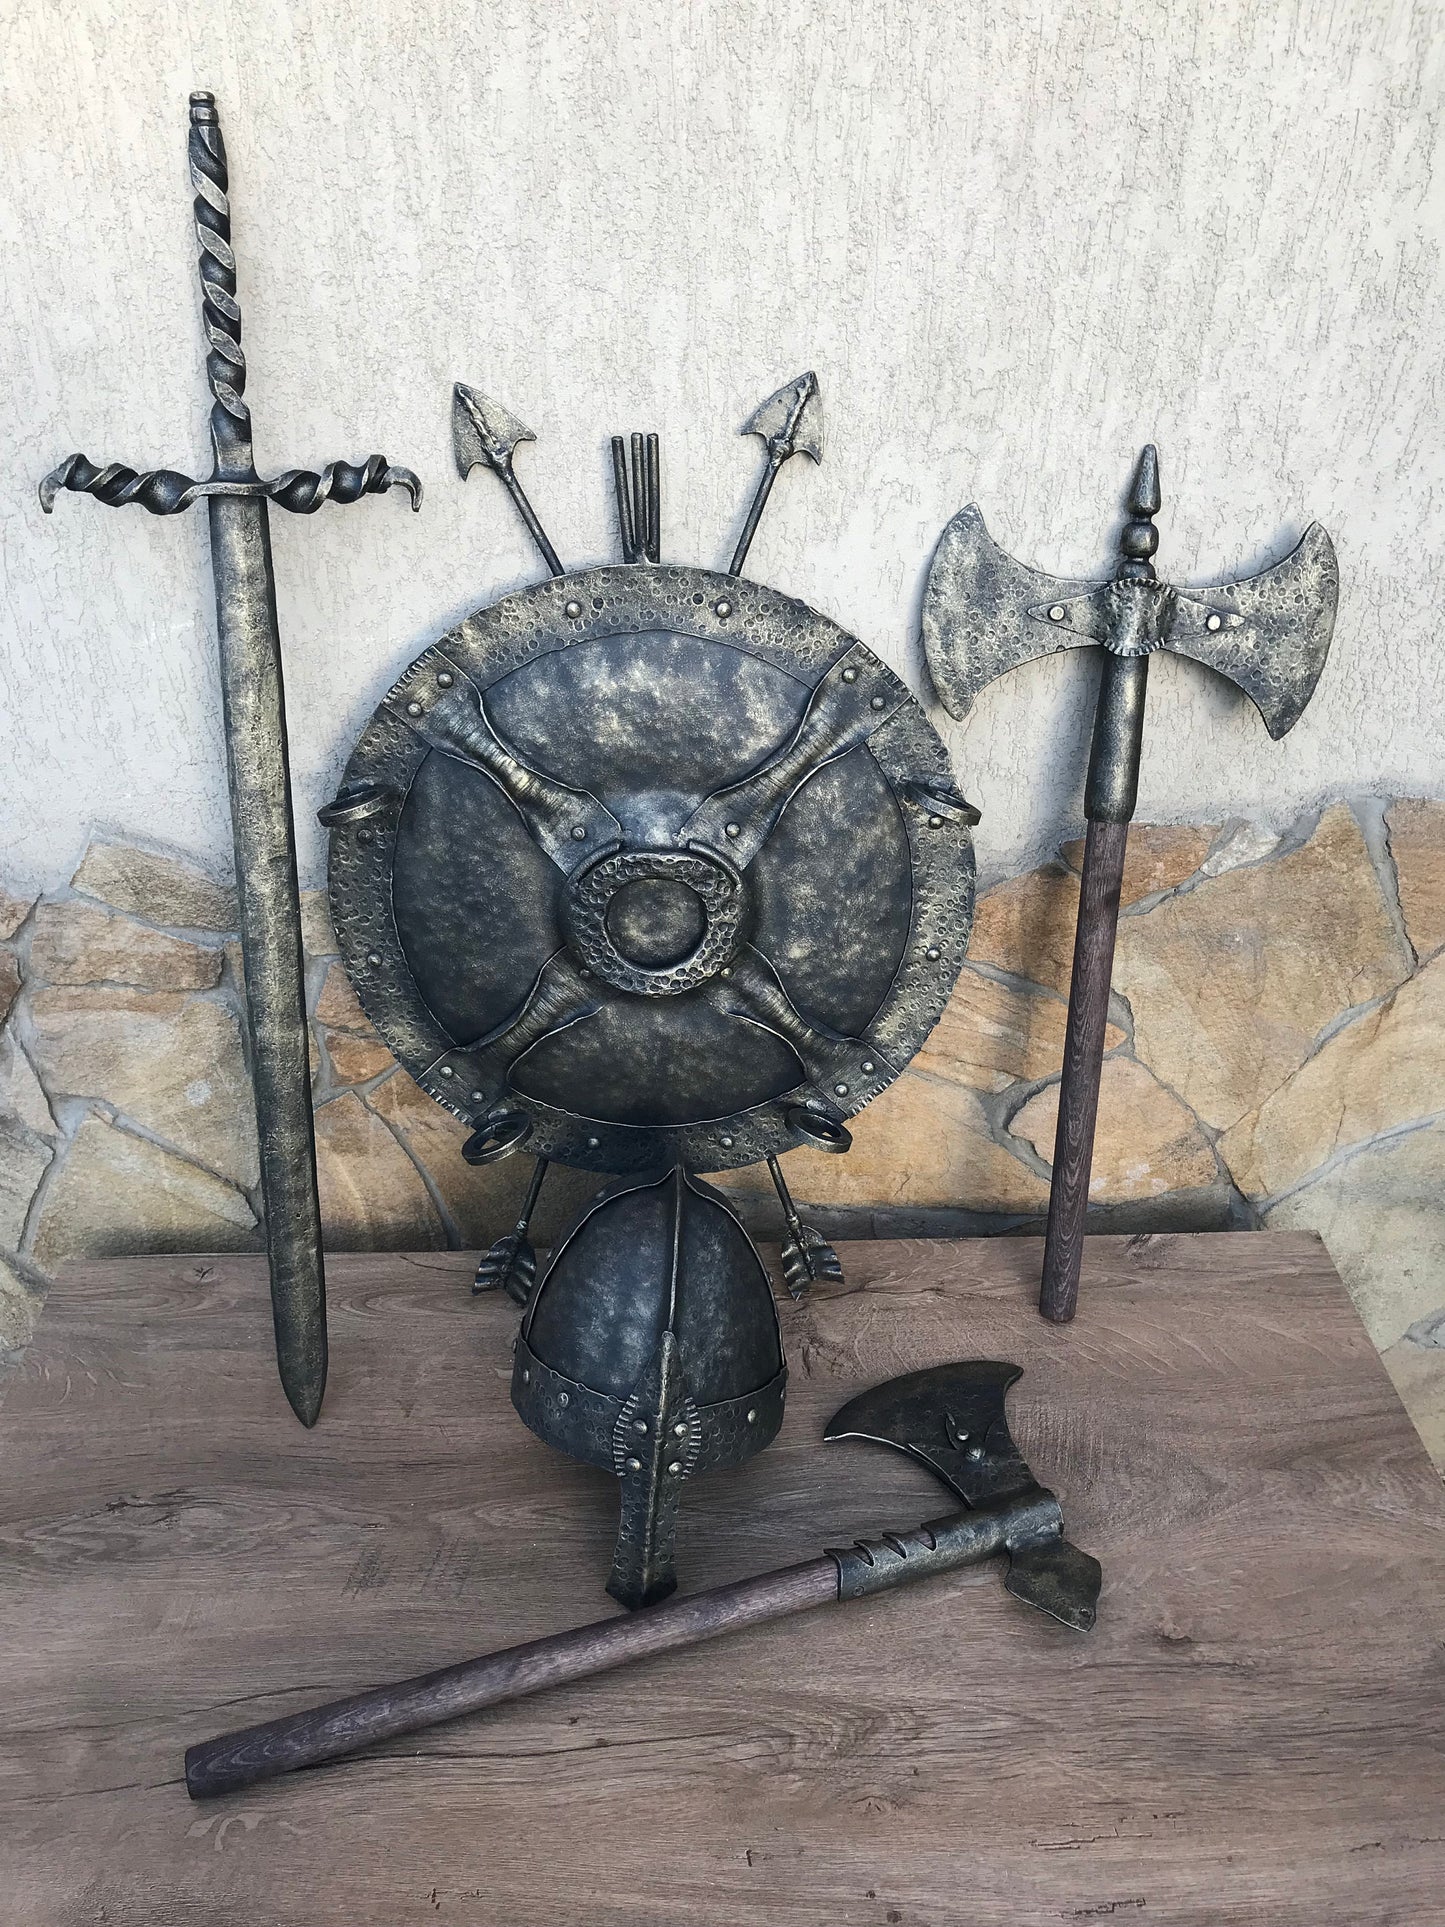 Viking axe, medieval axe, axe, knight, medieval armor, viking armor, viking artifact, warrior armour, medieval viking, warrior axe, LARP,SCA